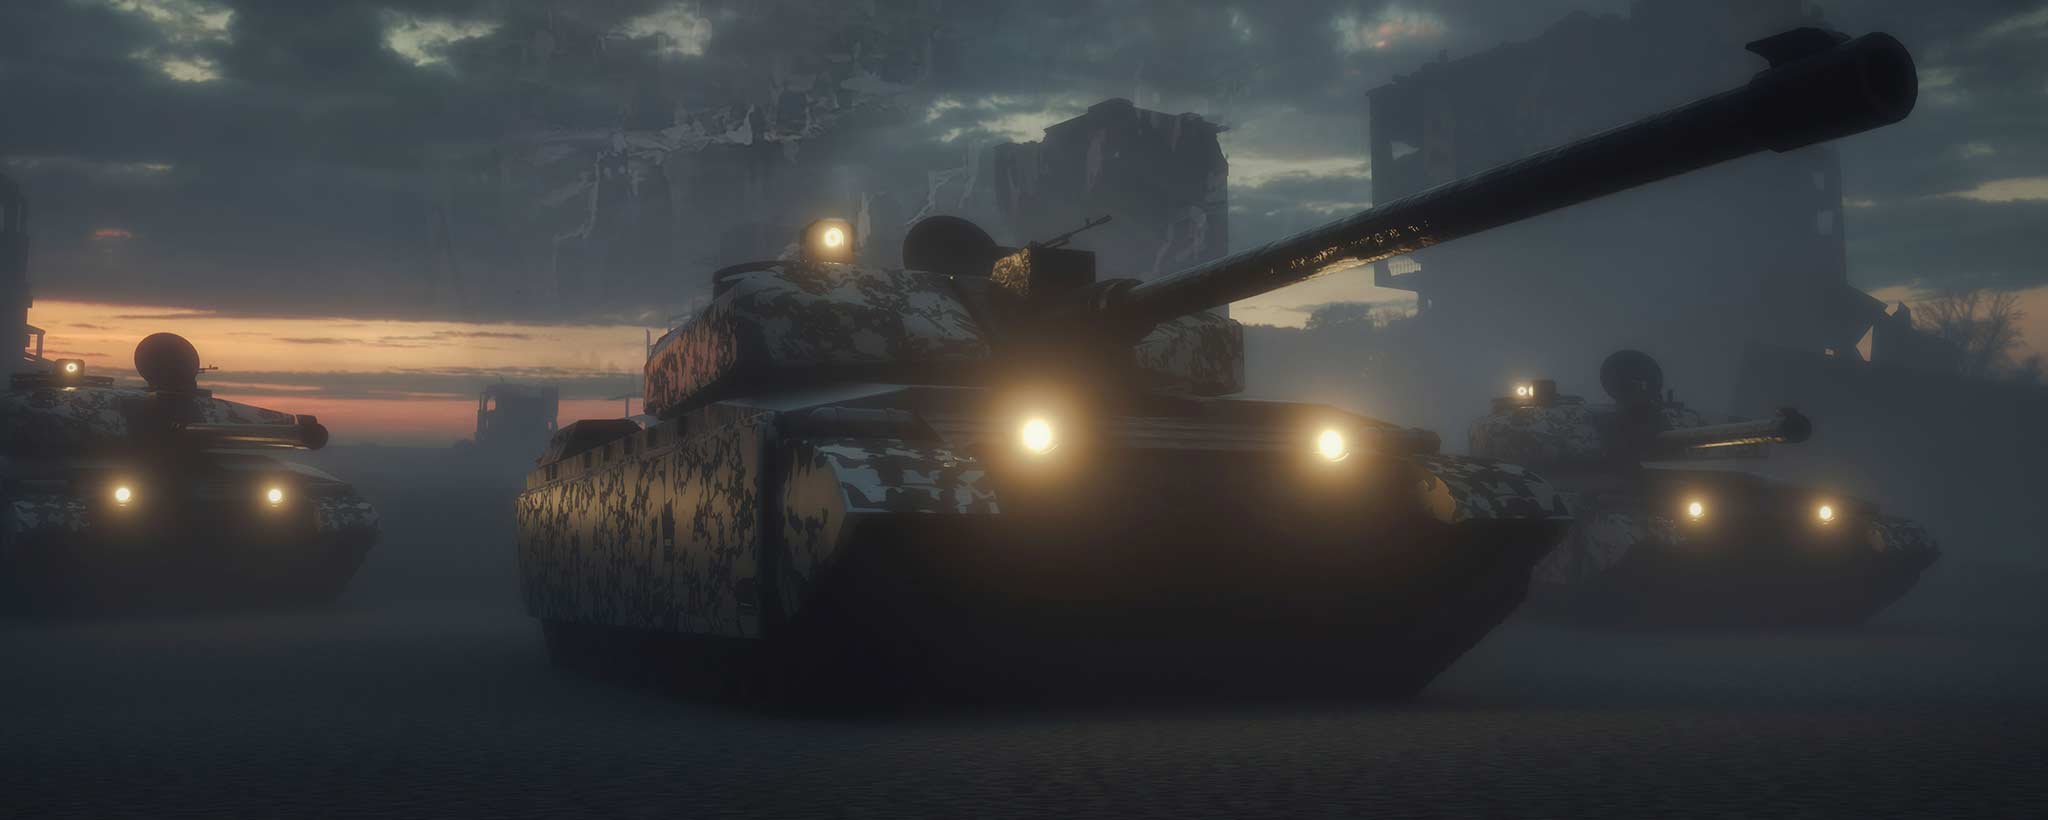 'Battlefield tanks in war'